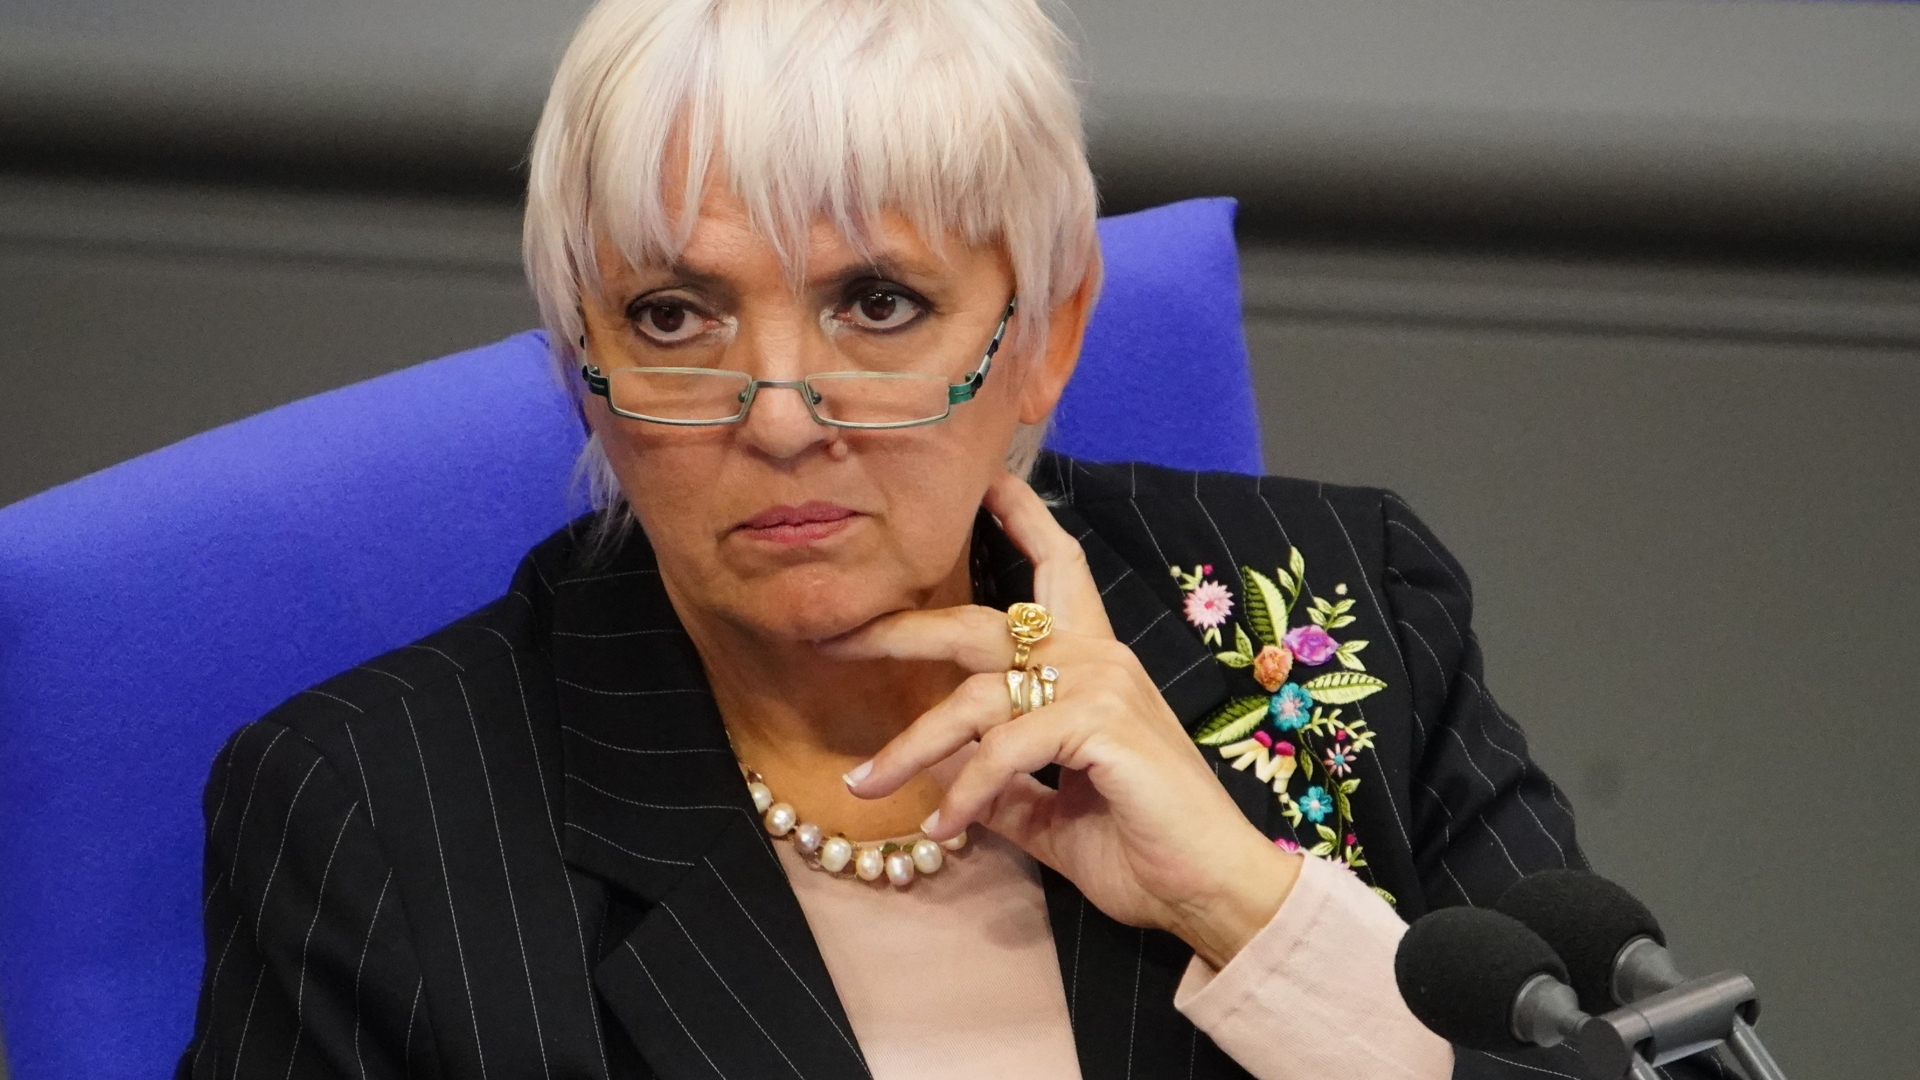 Die Grünen-Politikerin Claudia Roth während einer Bundestagsdebatte | CLEMENS BILAN/EPA-EFE/Shuttersto